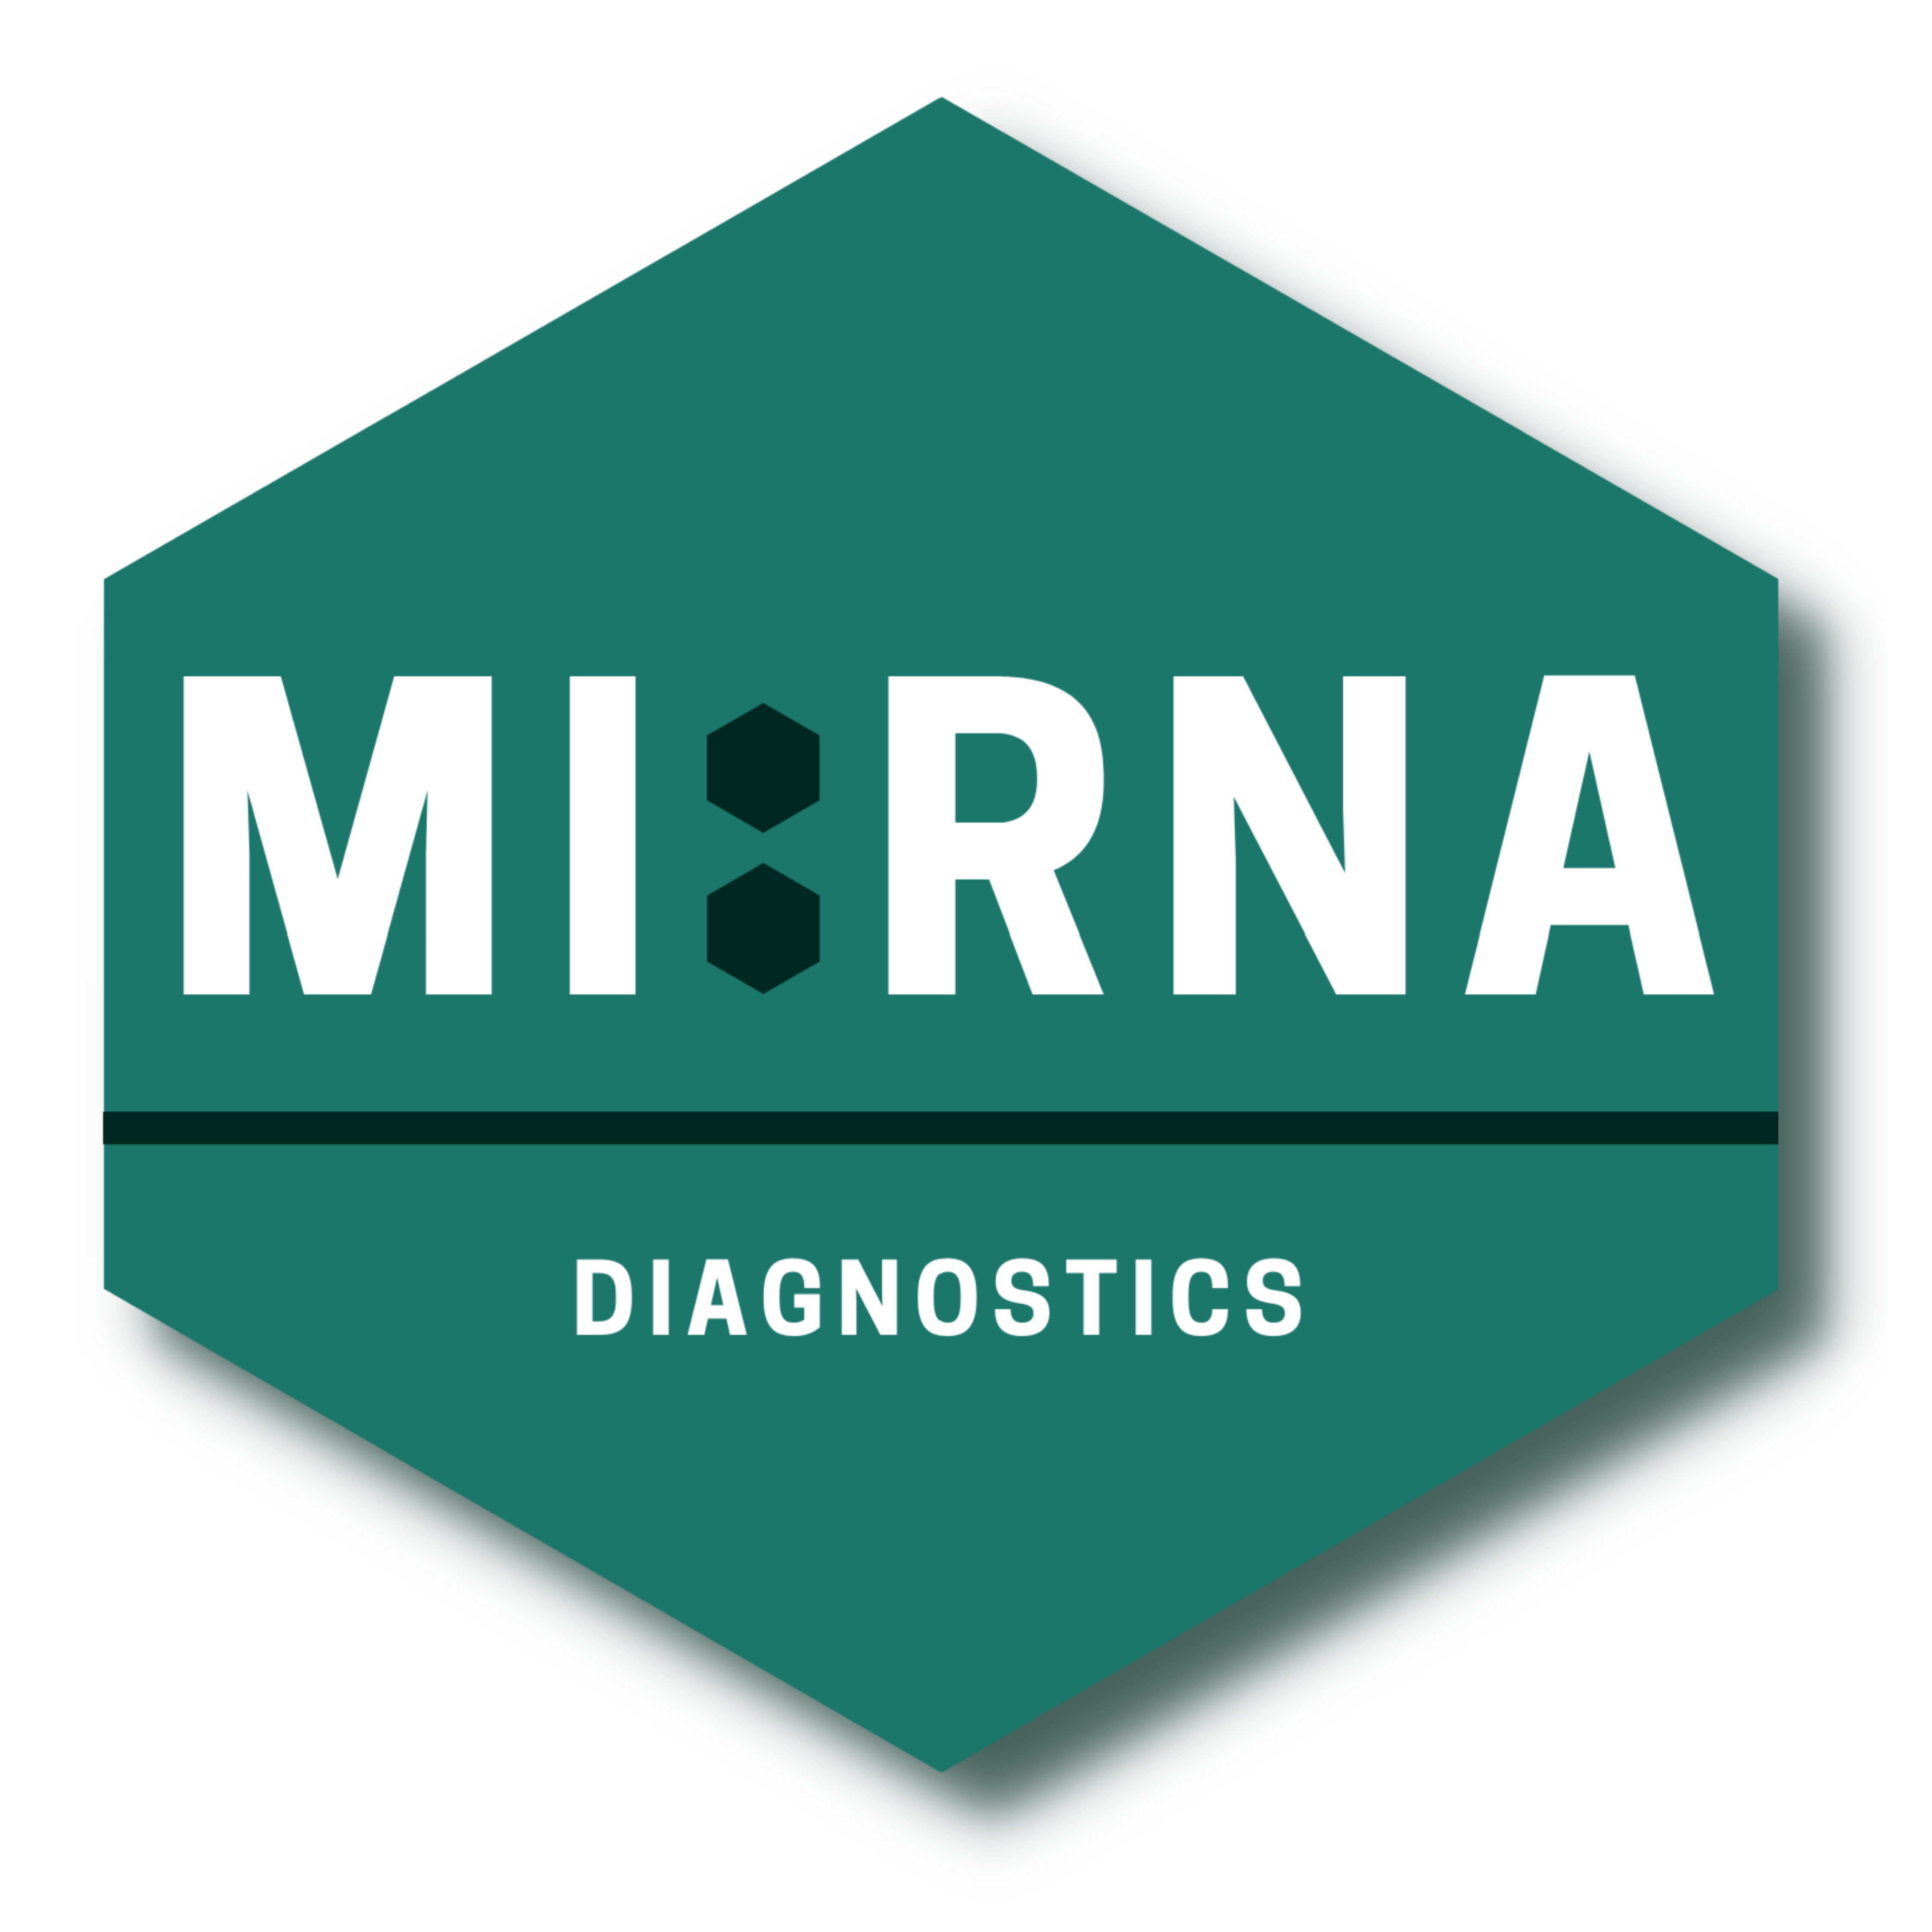 MI:RNA DIAGNOSTICS